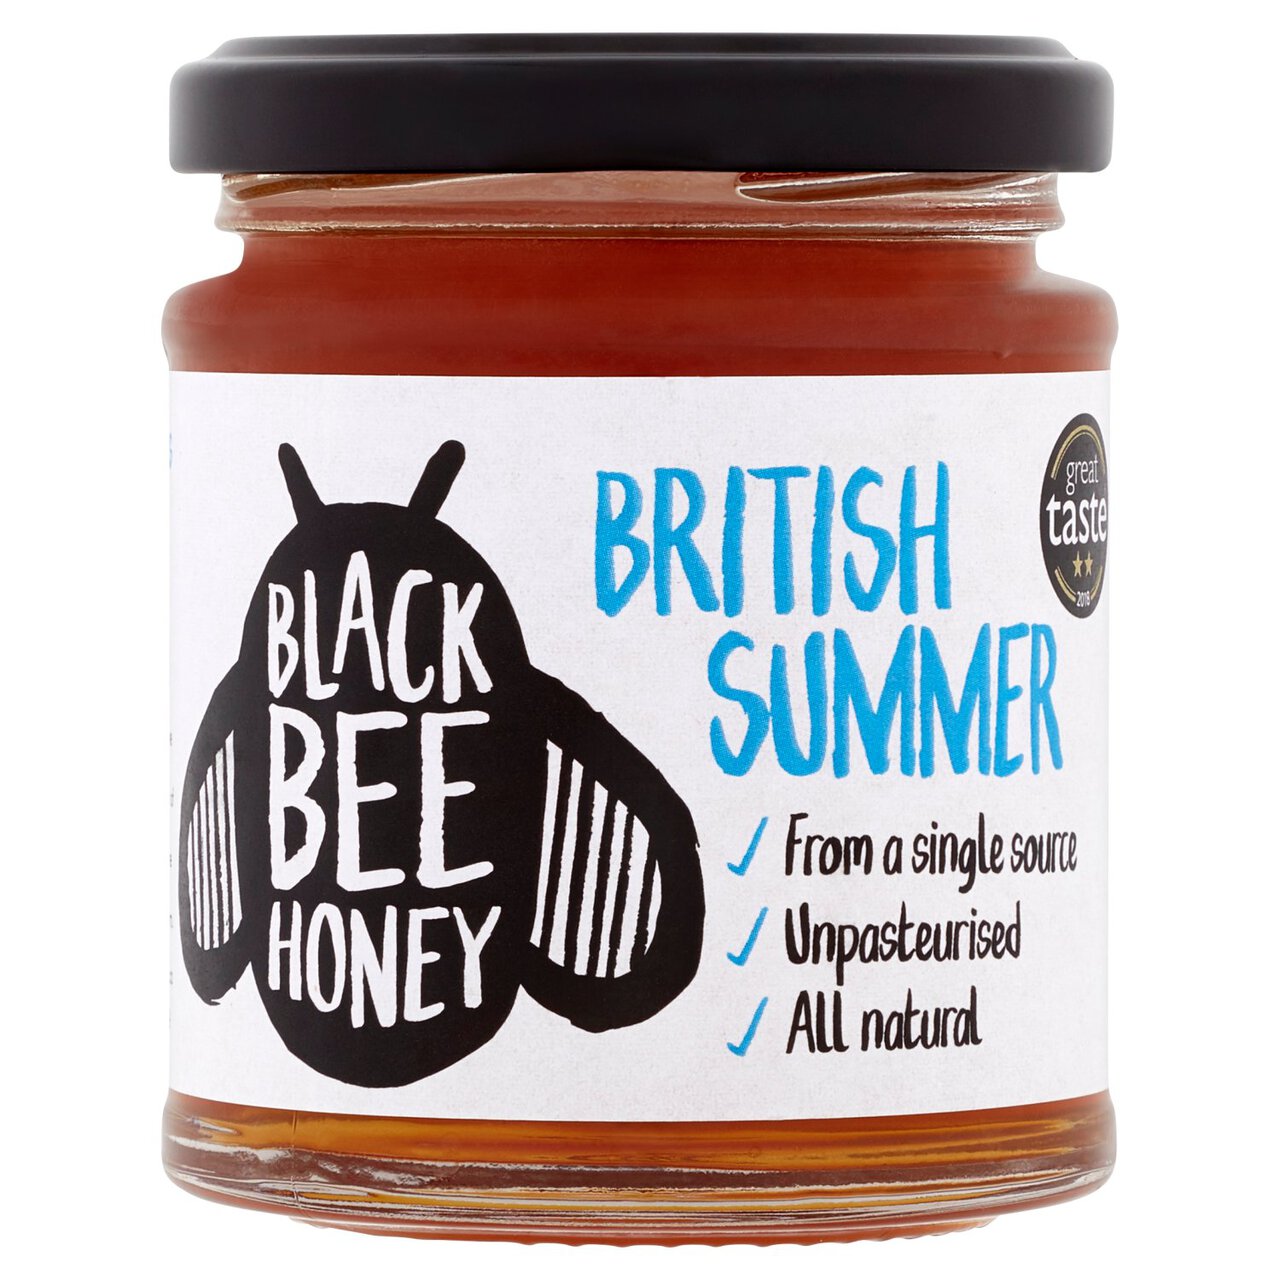 Black Bee Honey British Summer Honey 227g